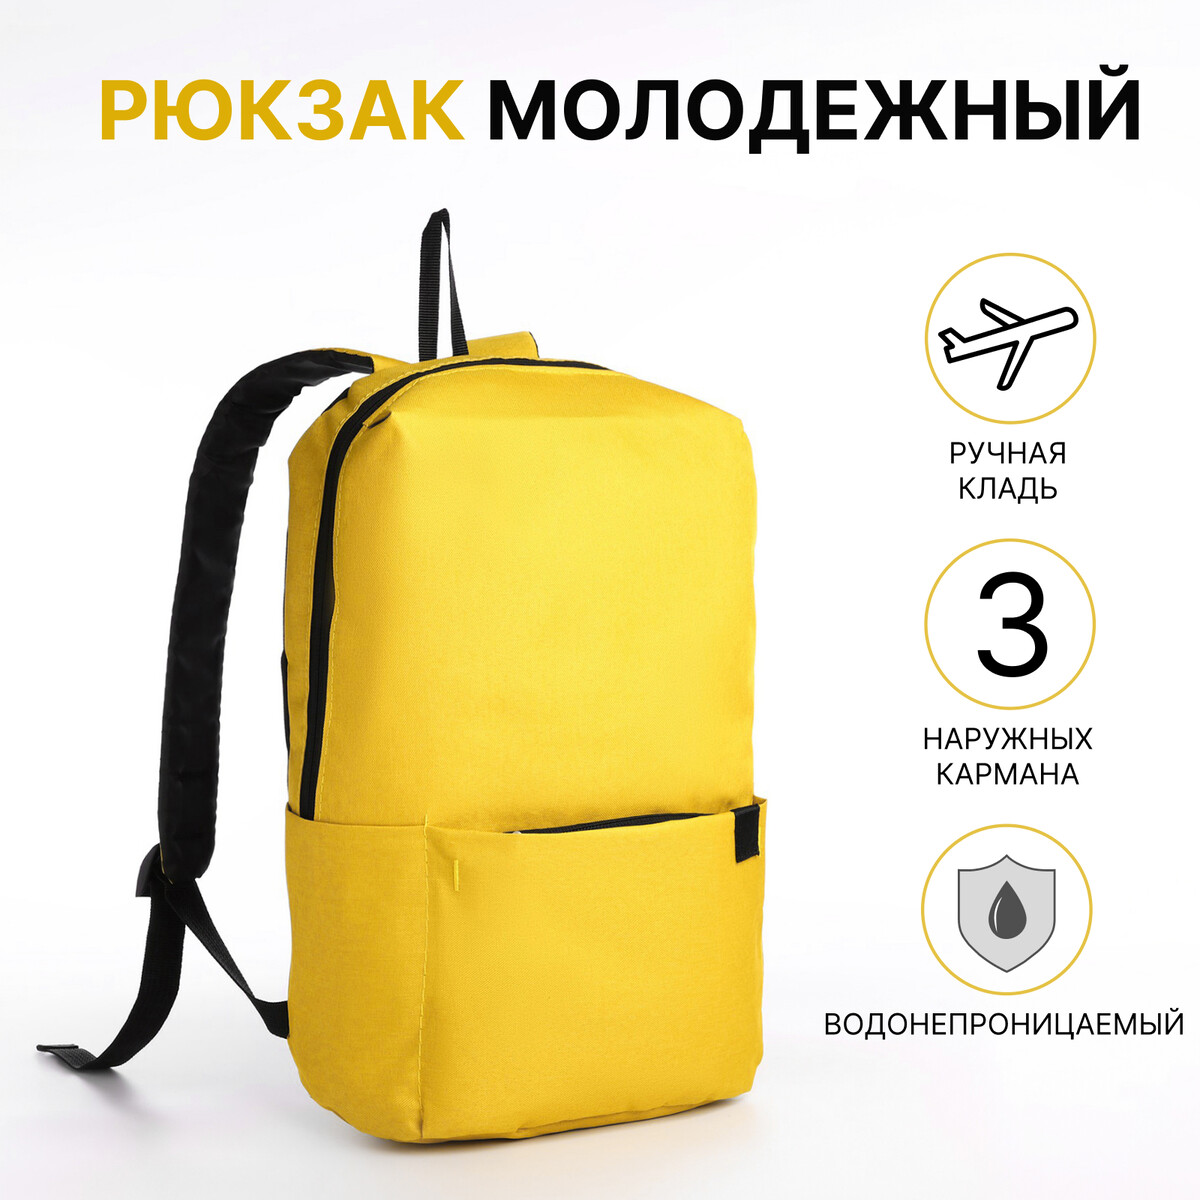 Рюкзак молодежный на молнии, водонепроницаемый, 3 наружных кармана, цвет желтый